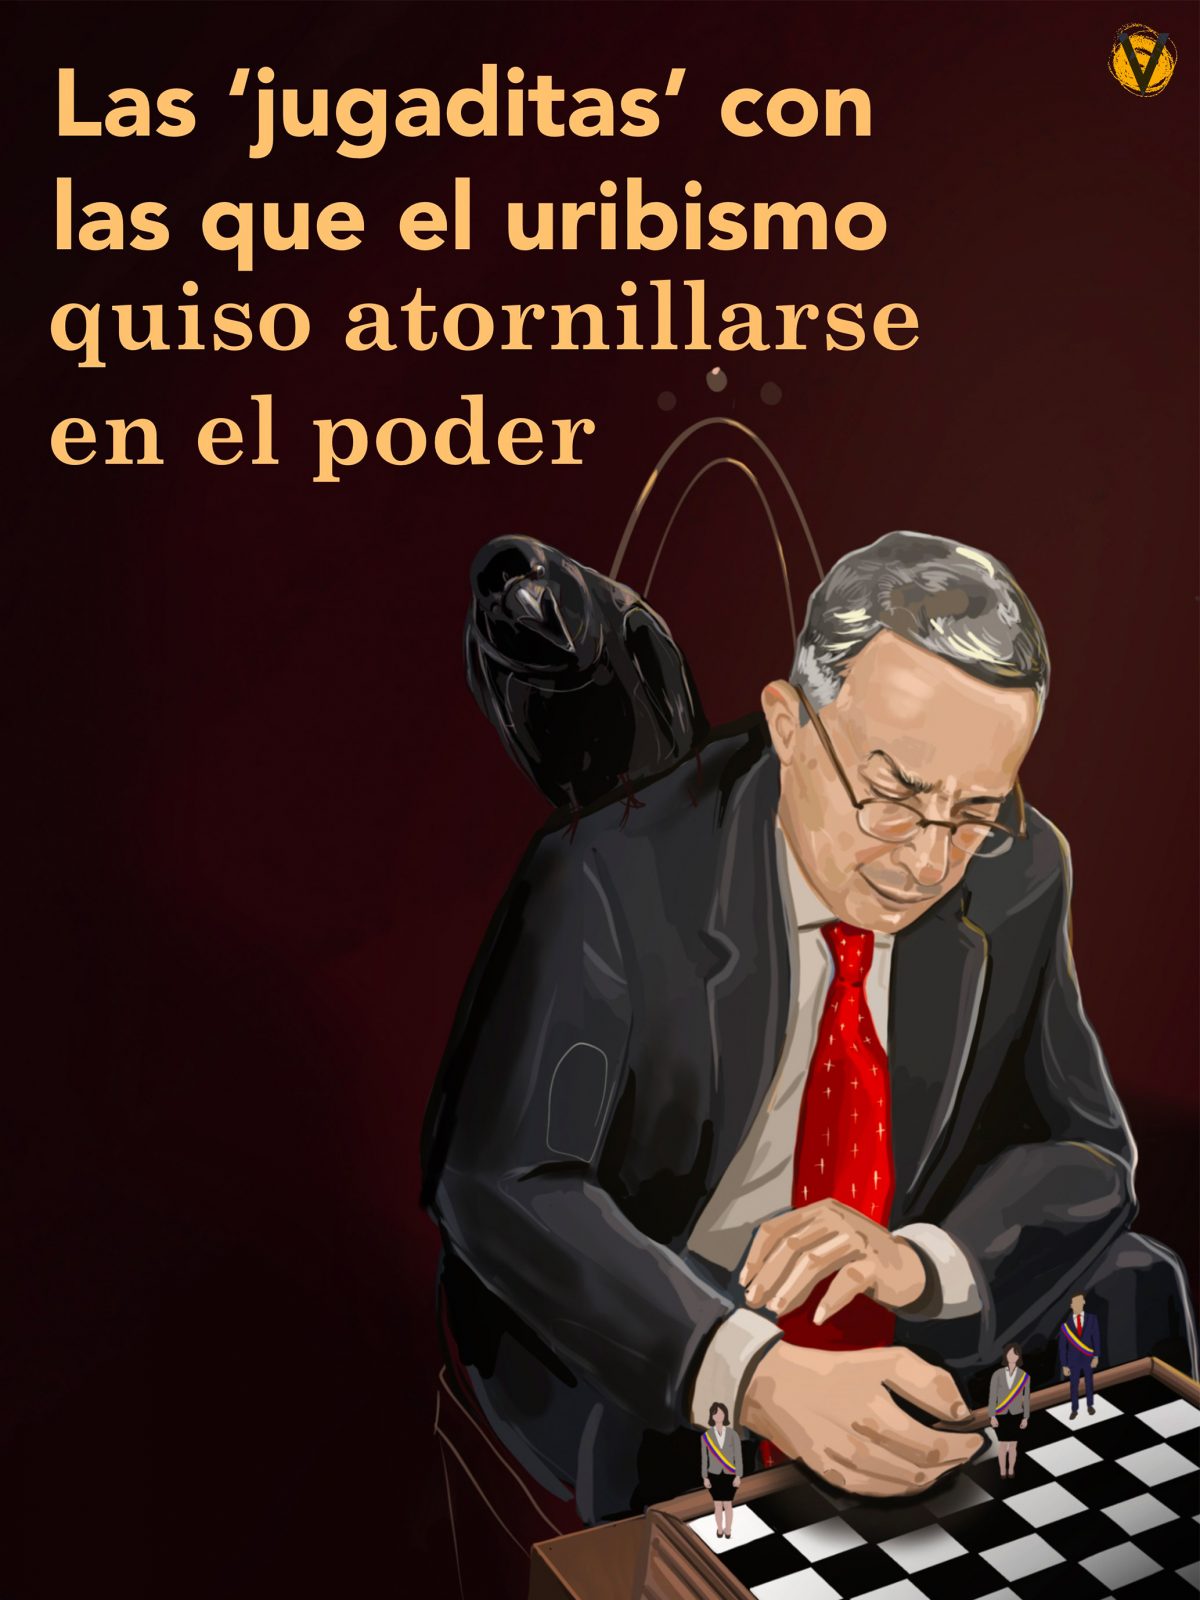 Las jugaditas de Uribe